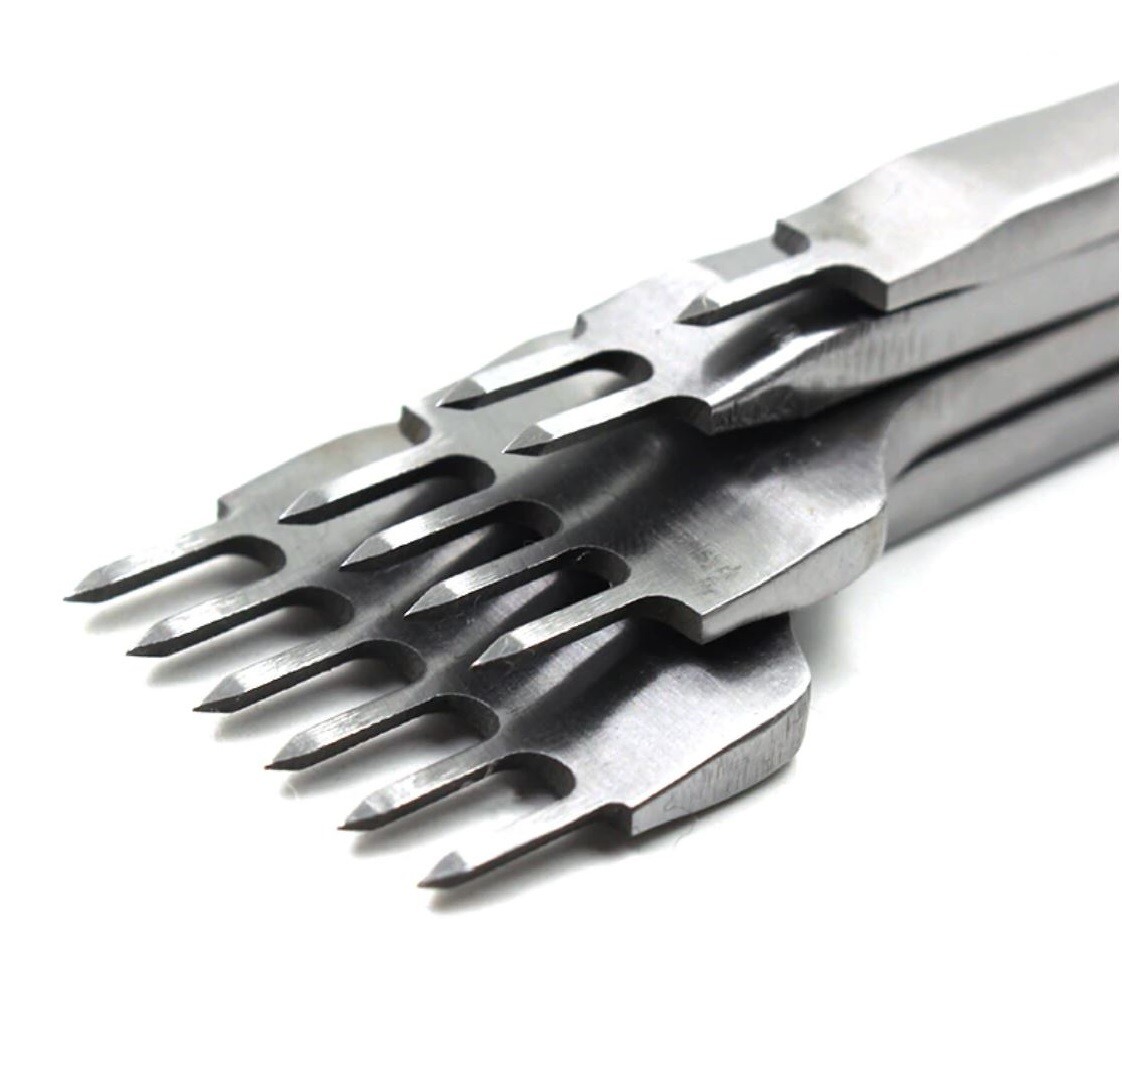 Perforadores para Cuero corte Diamante tipo Tenedores 4 unidades de 5mm